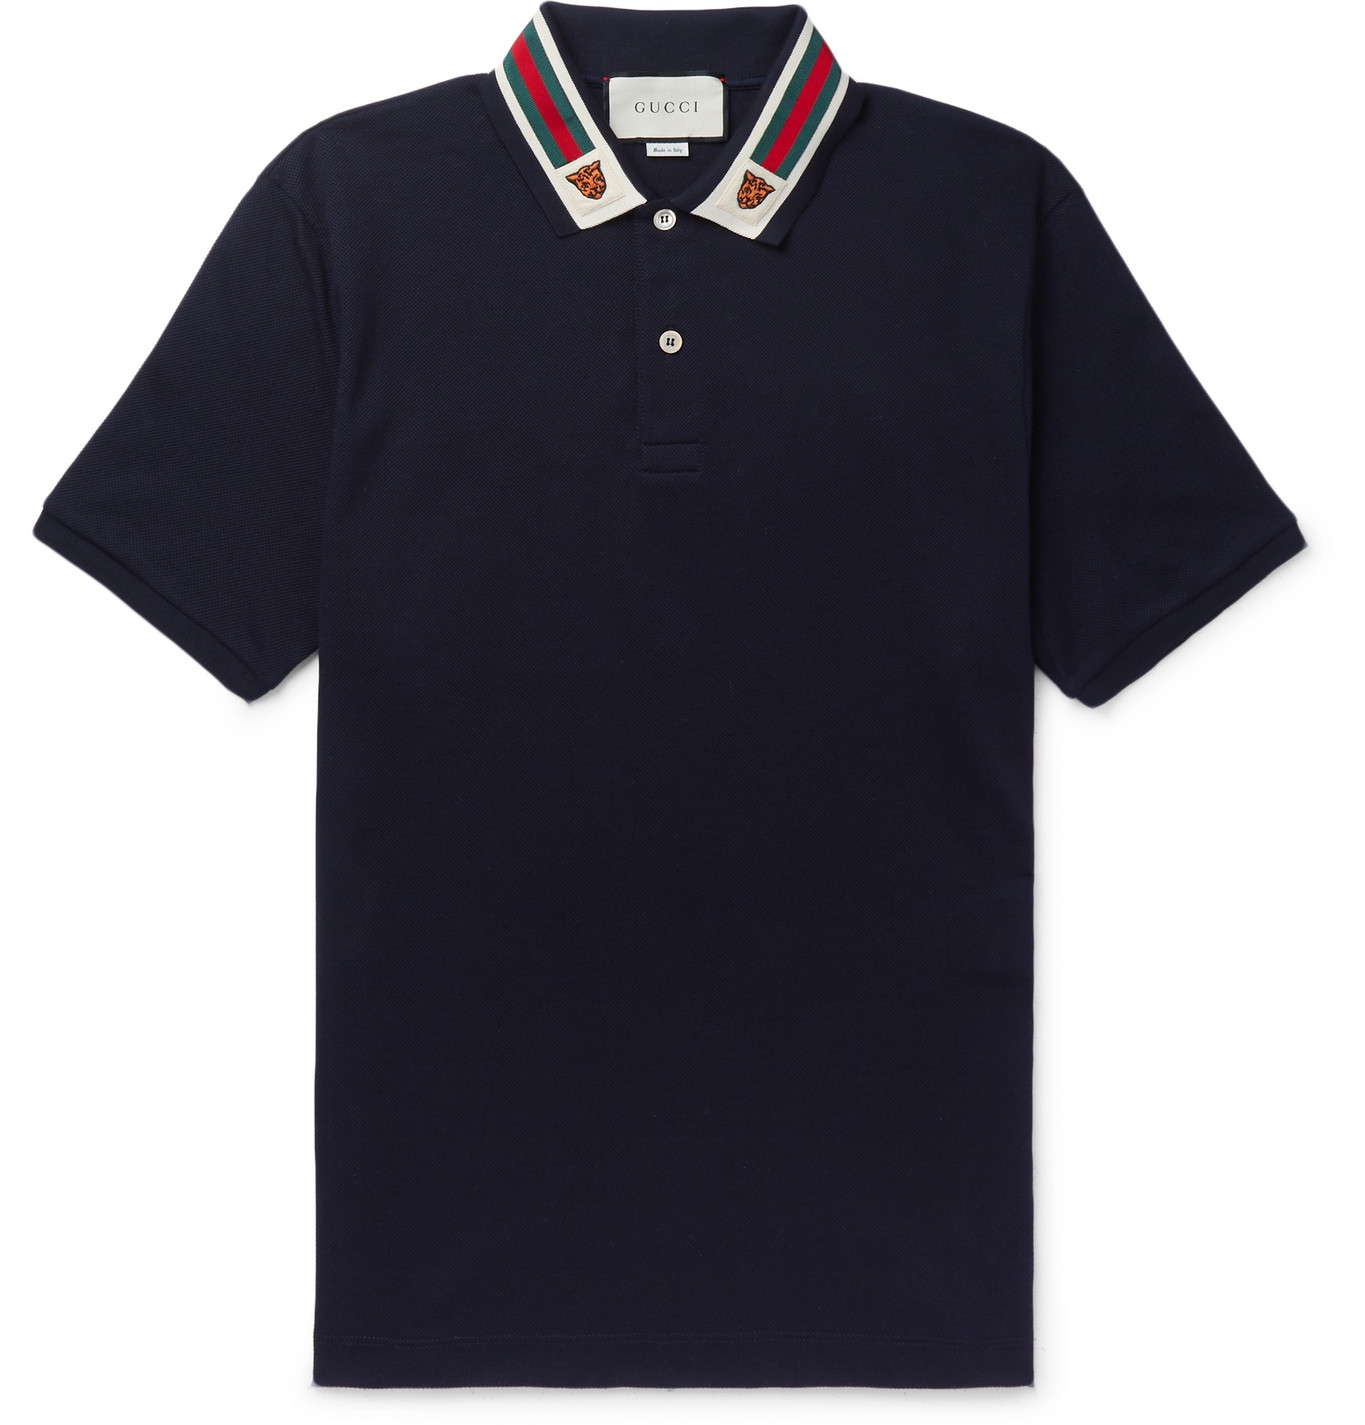 Gucci - Appliquéd Webbing-Trimmed Cotton-Piqué Polo Shirt - Men - Blue ...